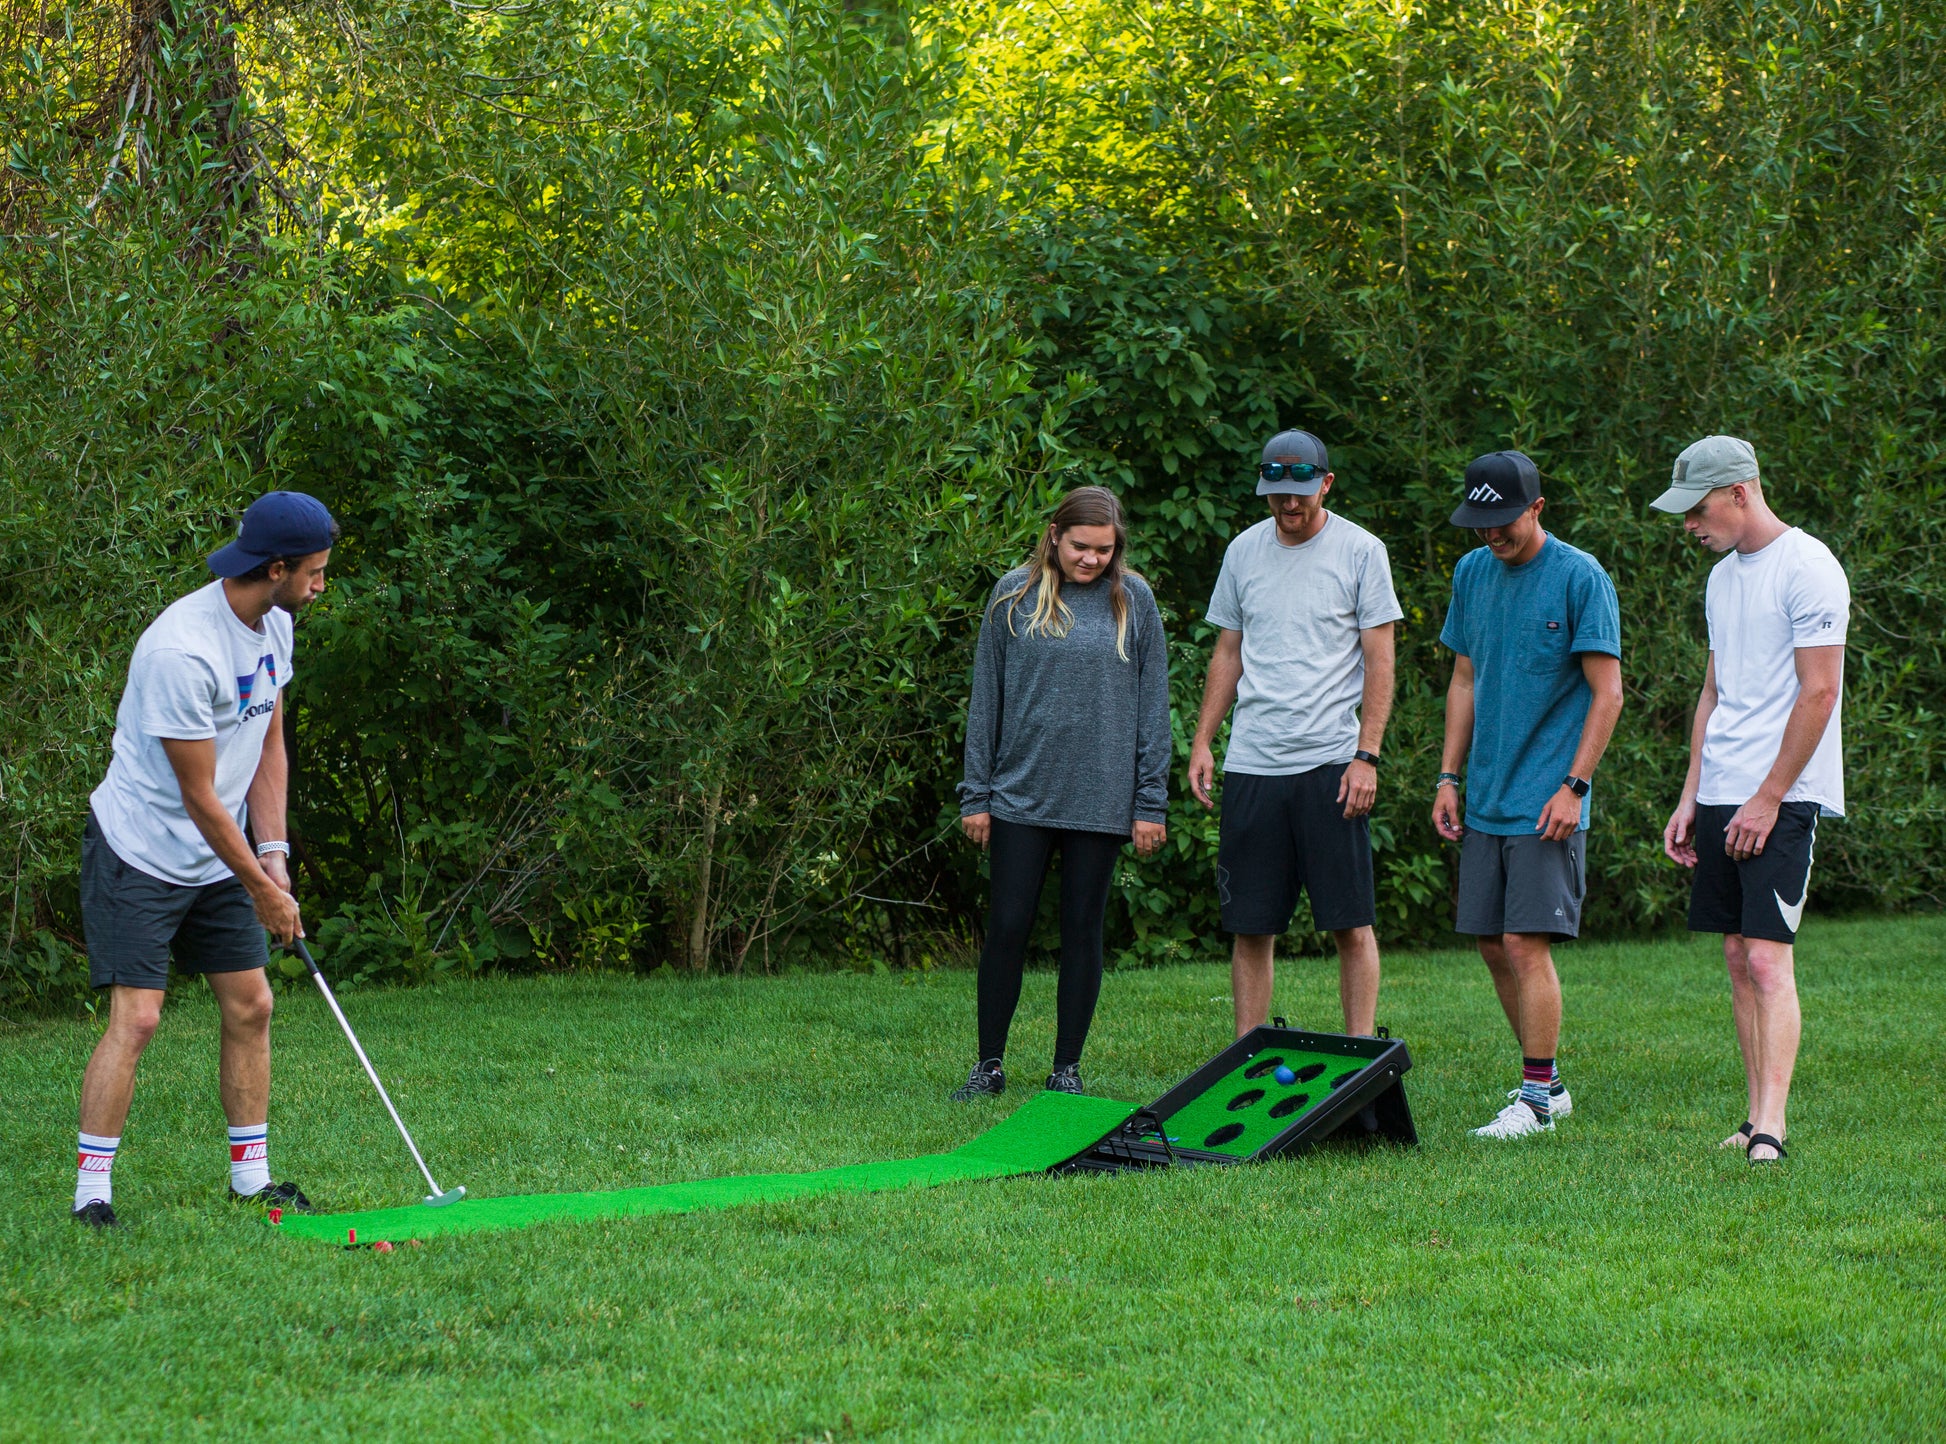 Buffalo Games Golf The Game Indoor/Outdoor Dexterity Minigolf Game